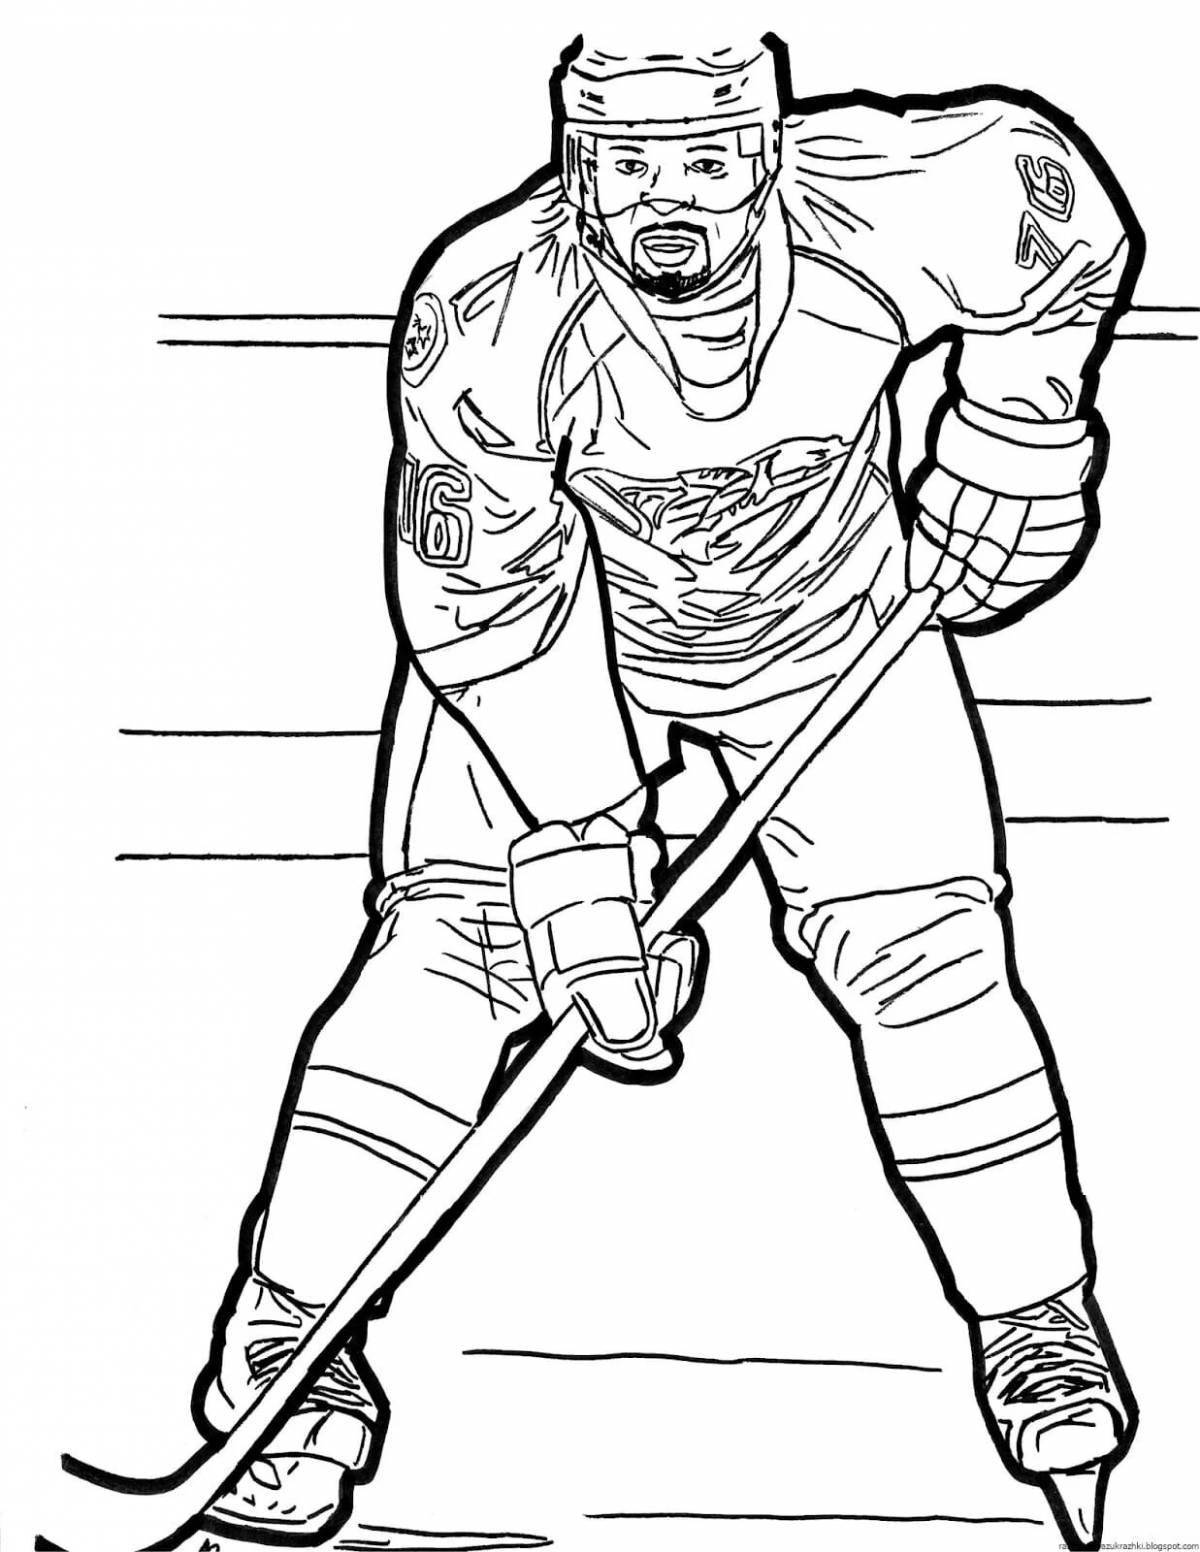 Fun voicebook hockey coloring book